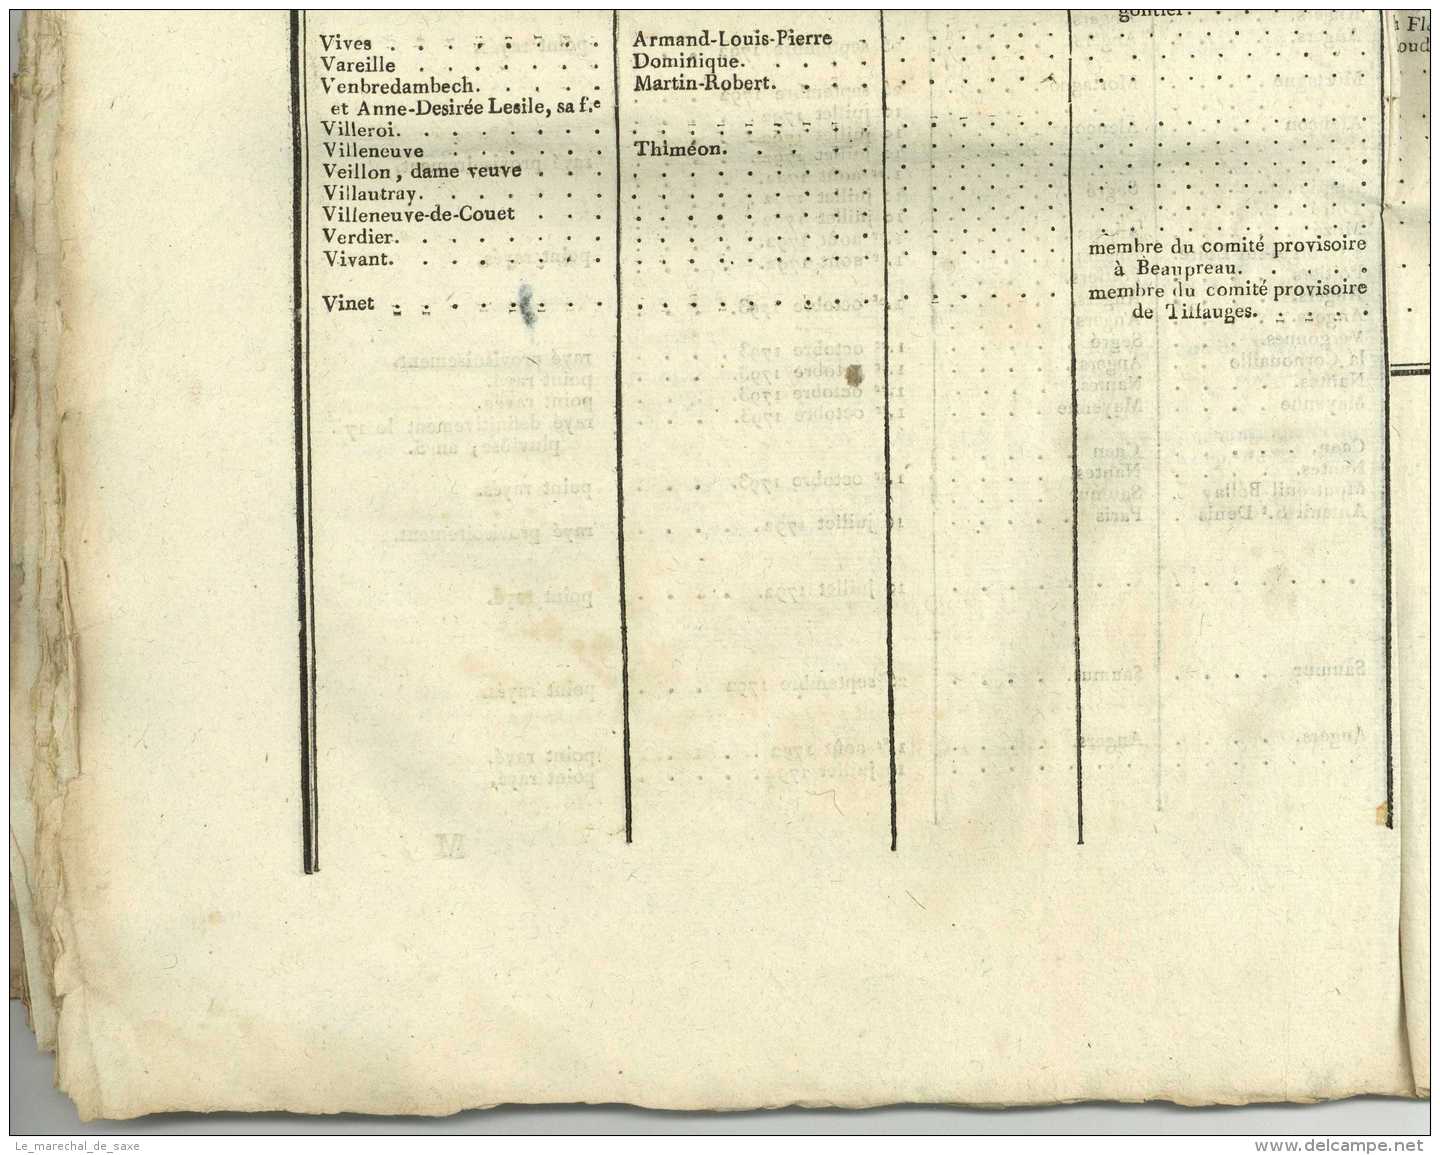 REVOLUTION &ndash; MAINE-ET-LOIRE &ndash; RELEVE général des EMIGRES - 1797 Leterme-Saulnier